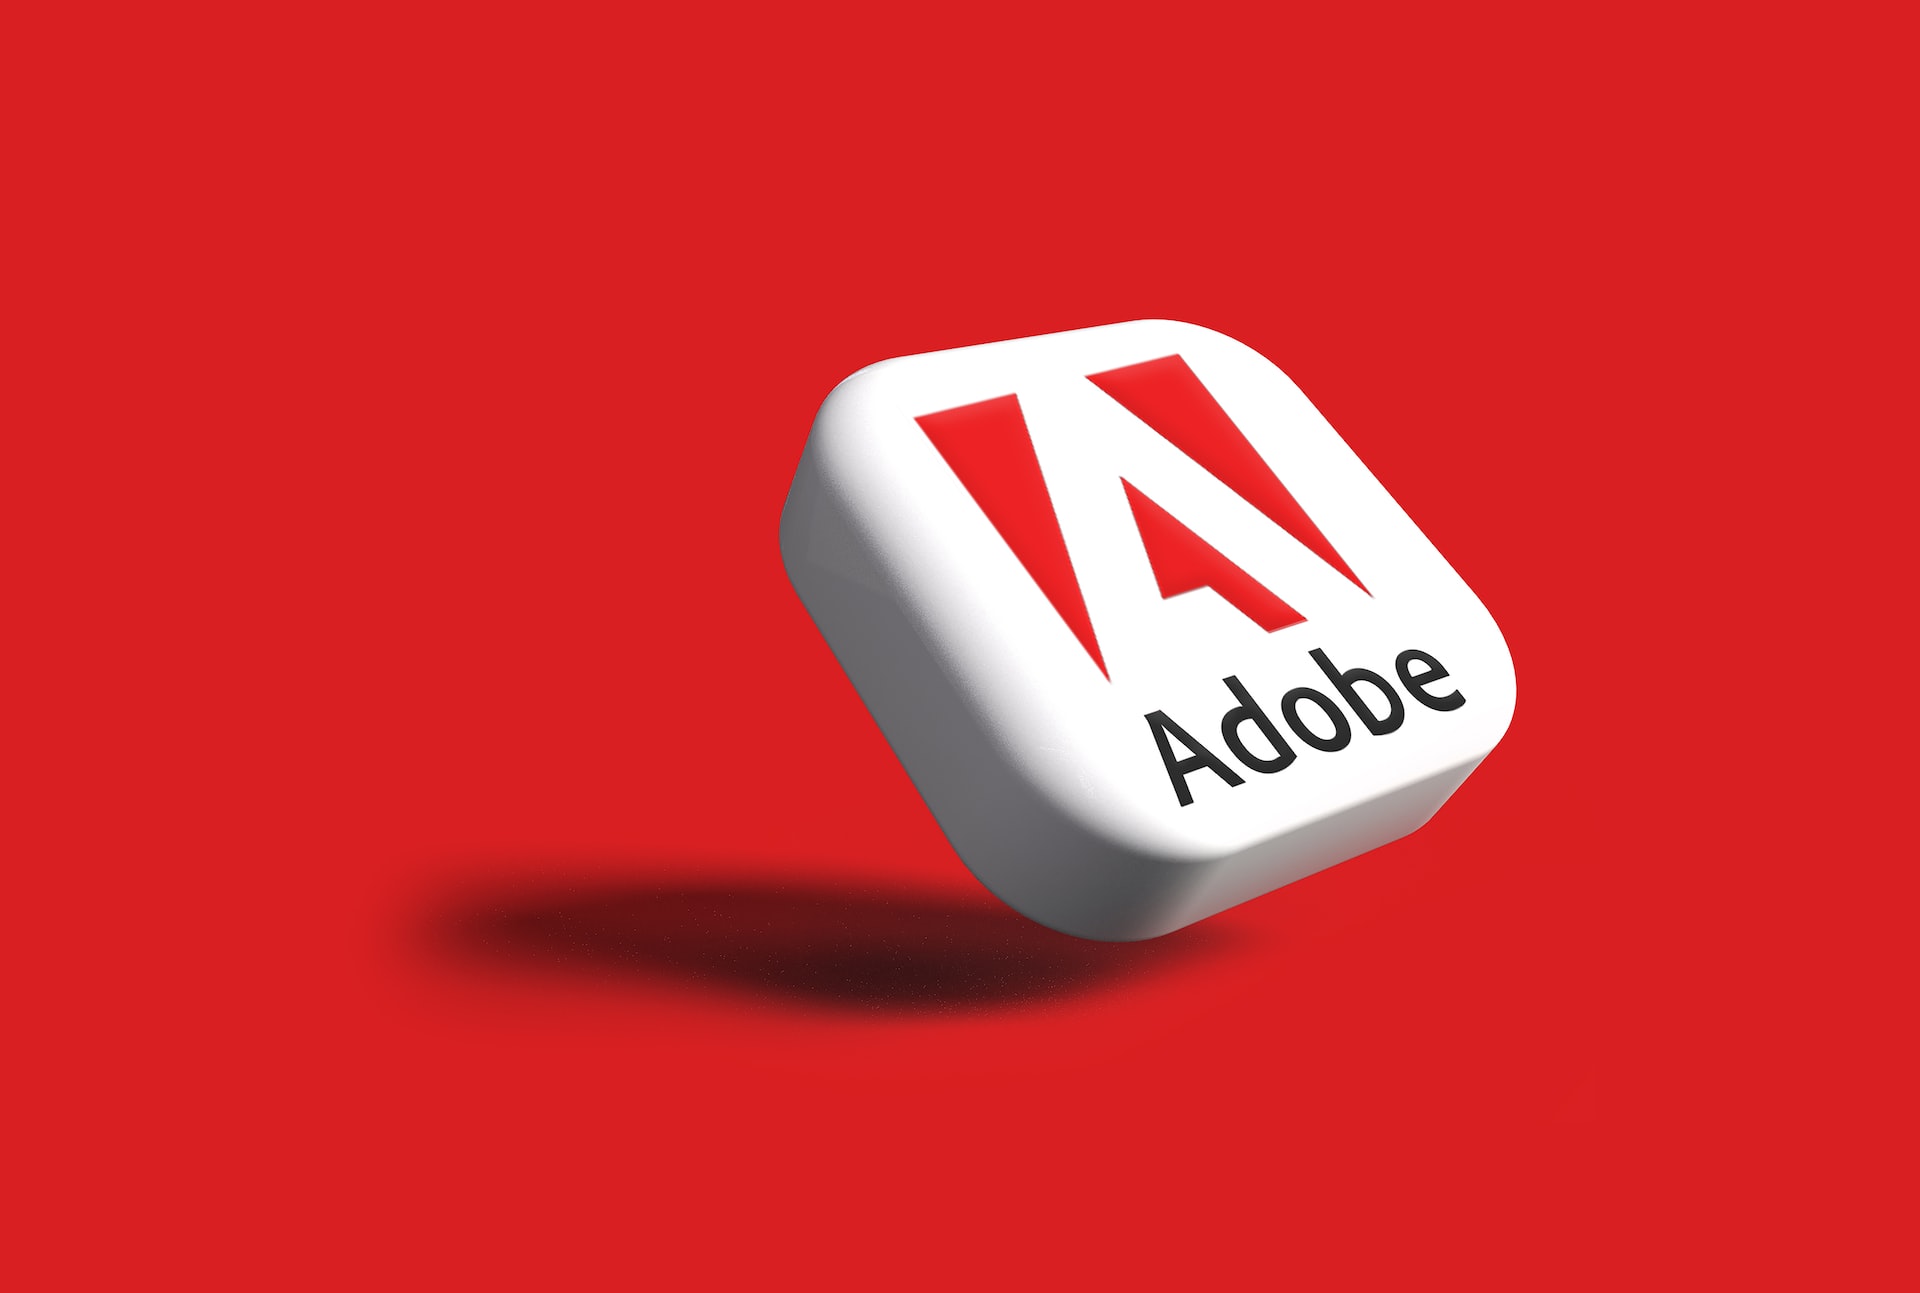 Adobe stock, ADBE stock